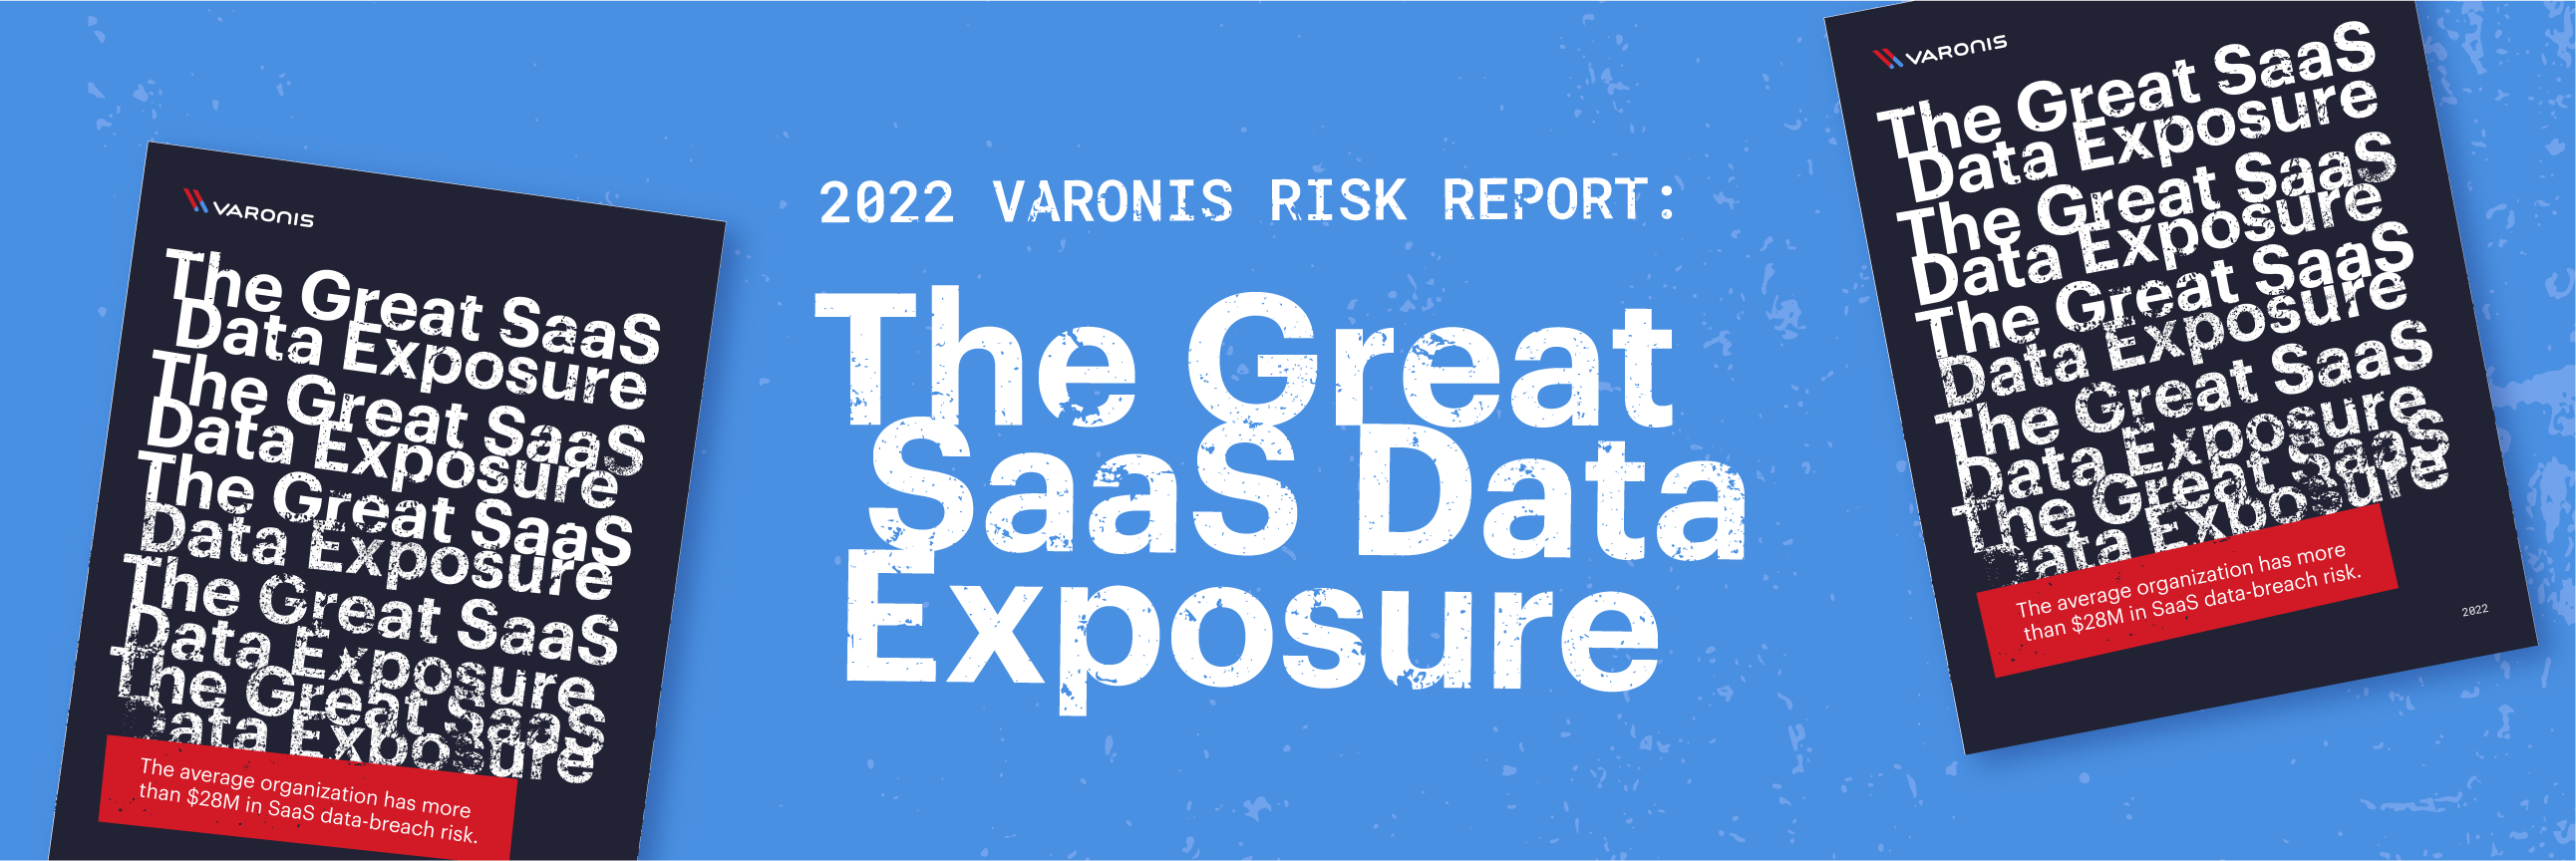 Notre rapport sur les risques du SaaS révèle que l'exposition des données Cloud représente un risque de 28 millions € pour une entreprise moyenne.